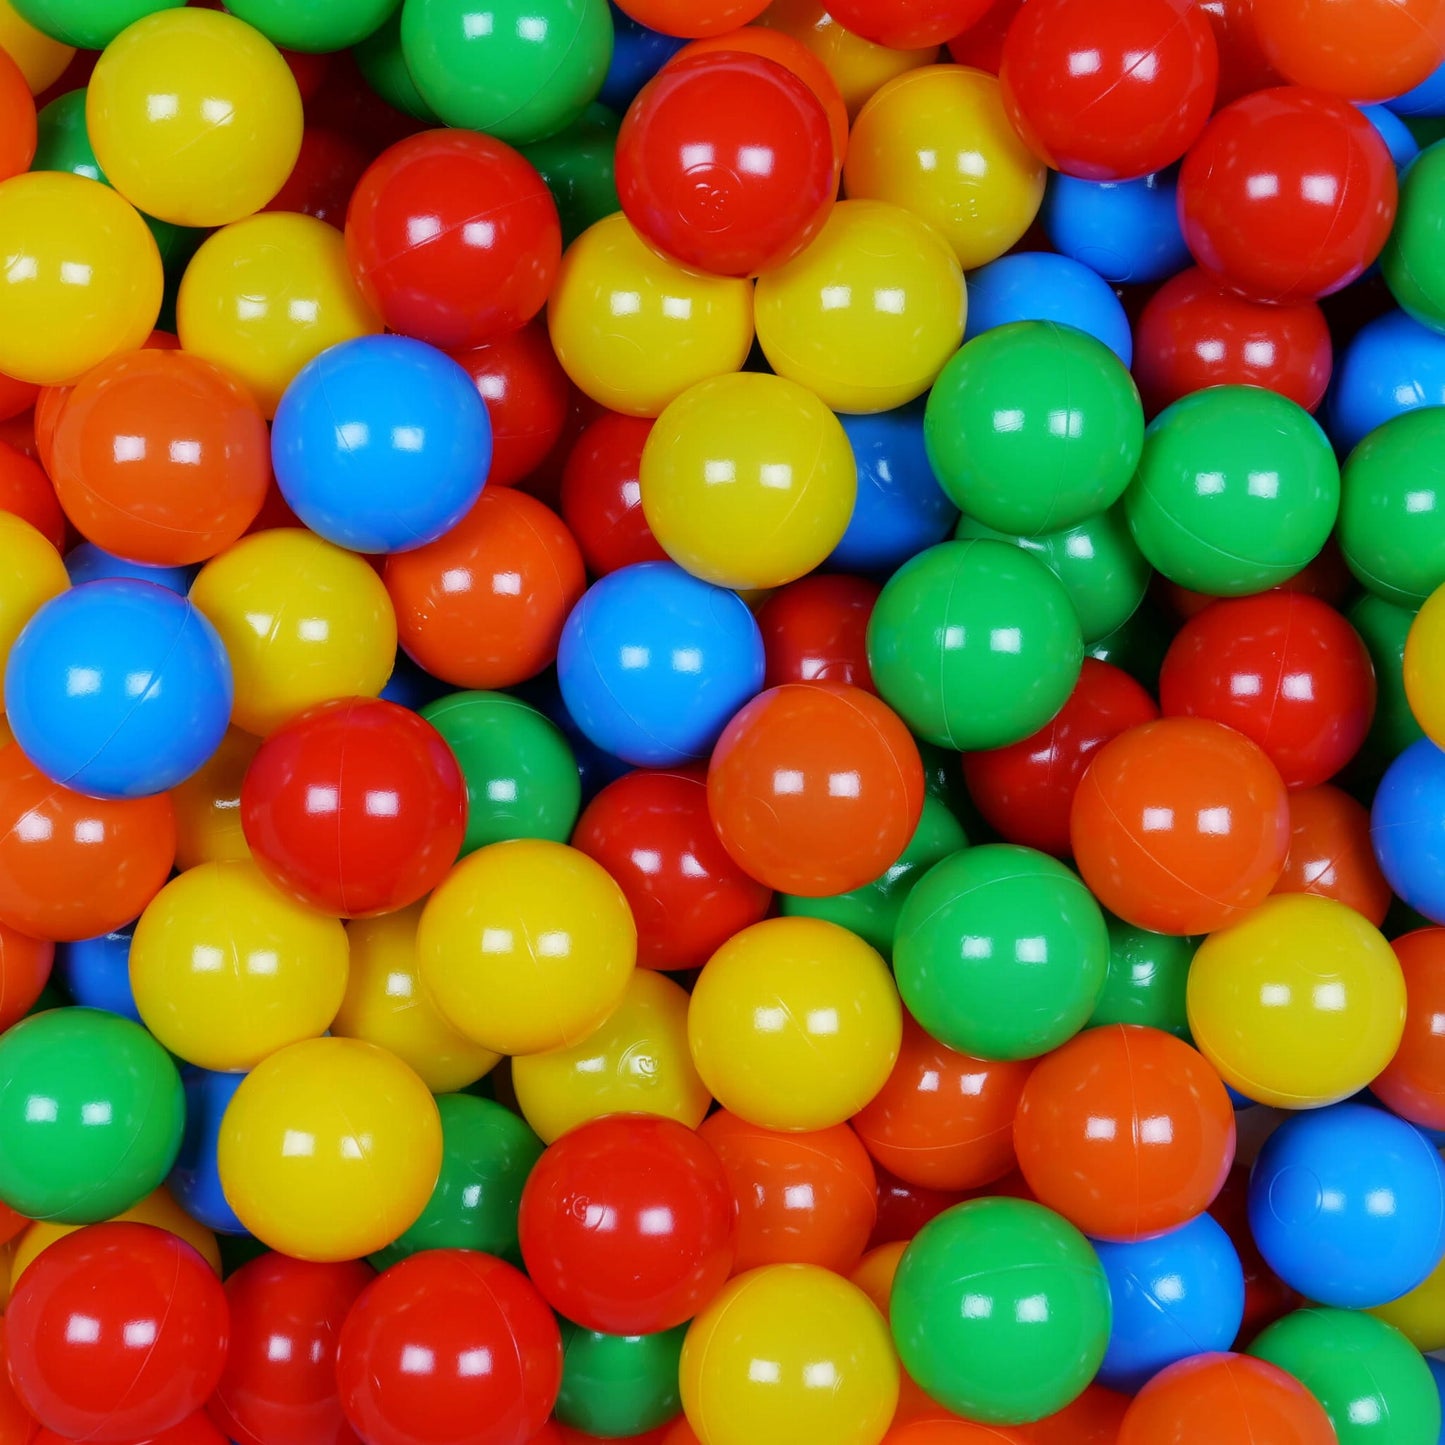 Balles de jeu ø7cm 50 pièces vert, jaune, orange, rouge, bleu